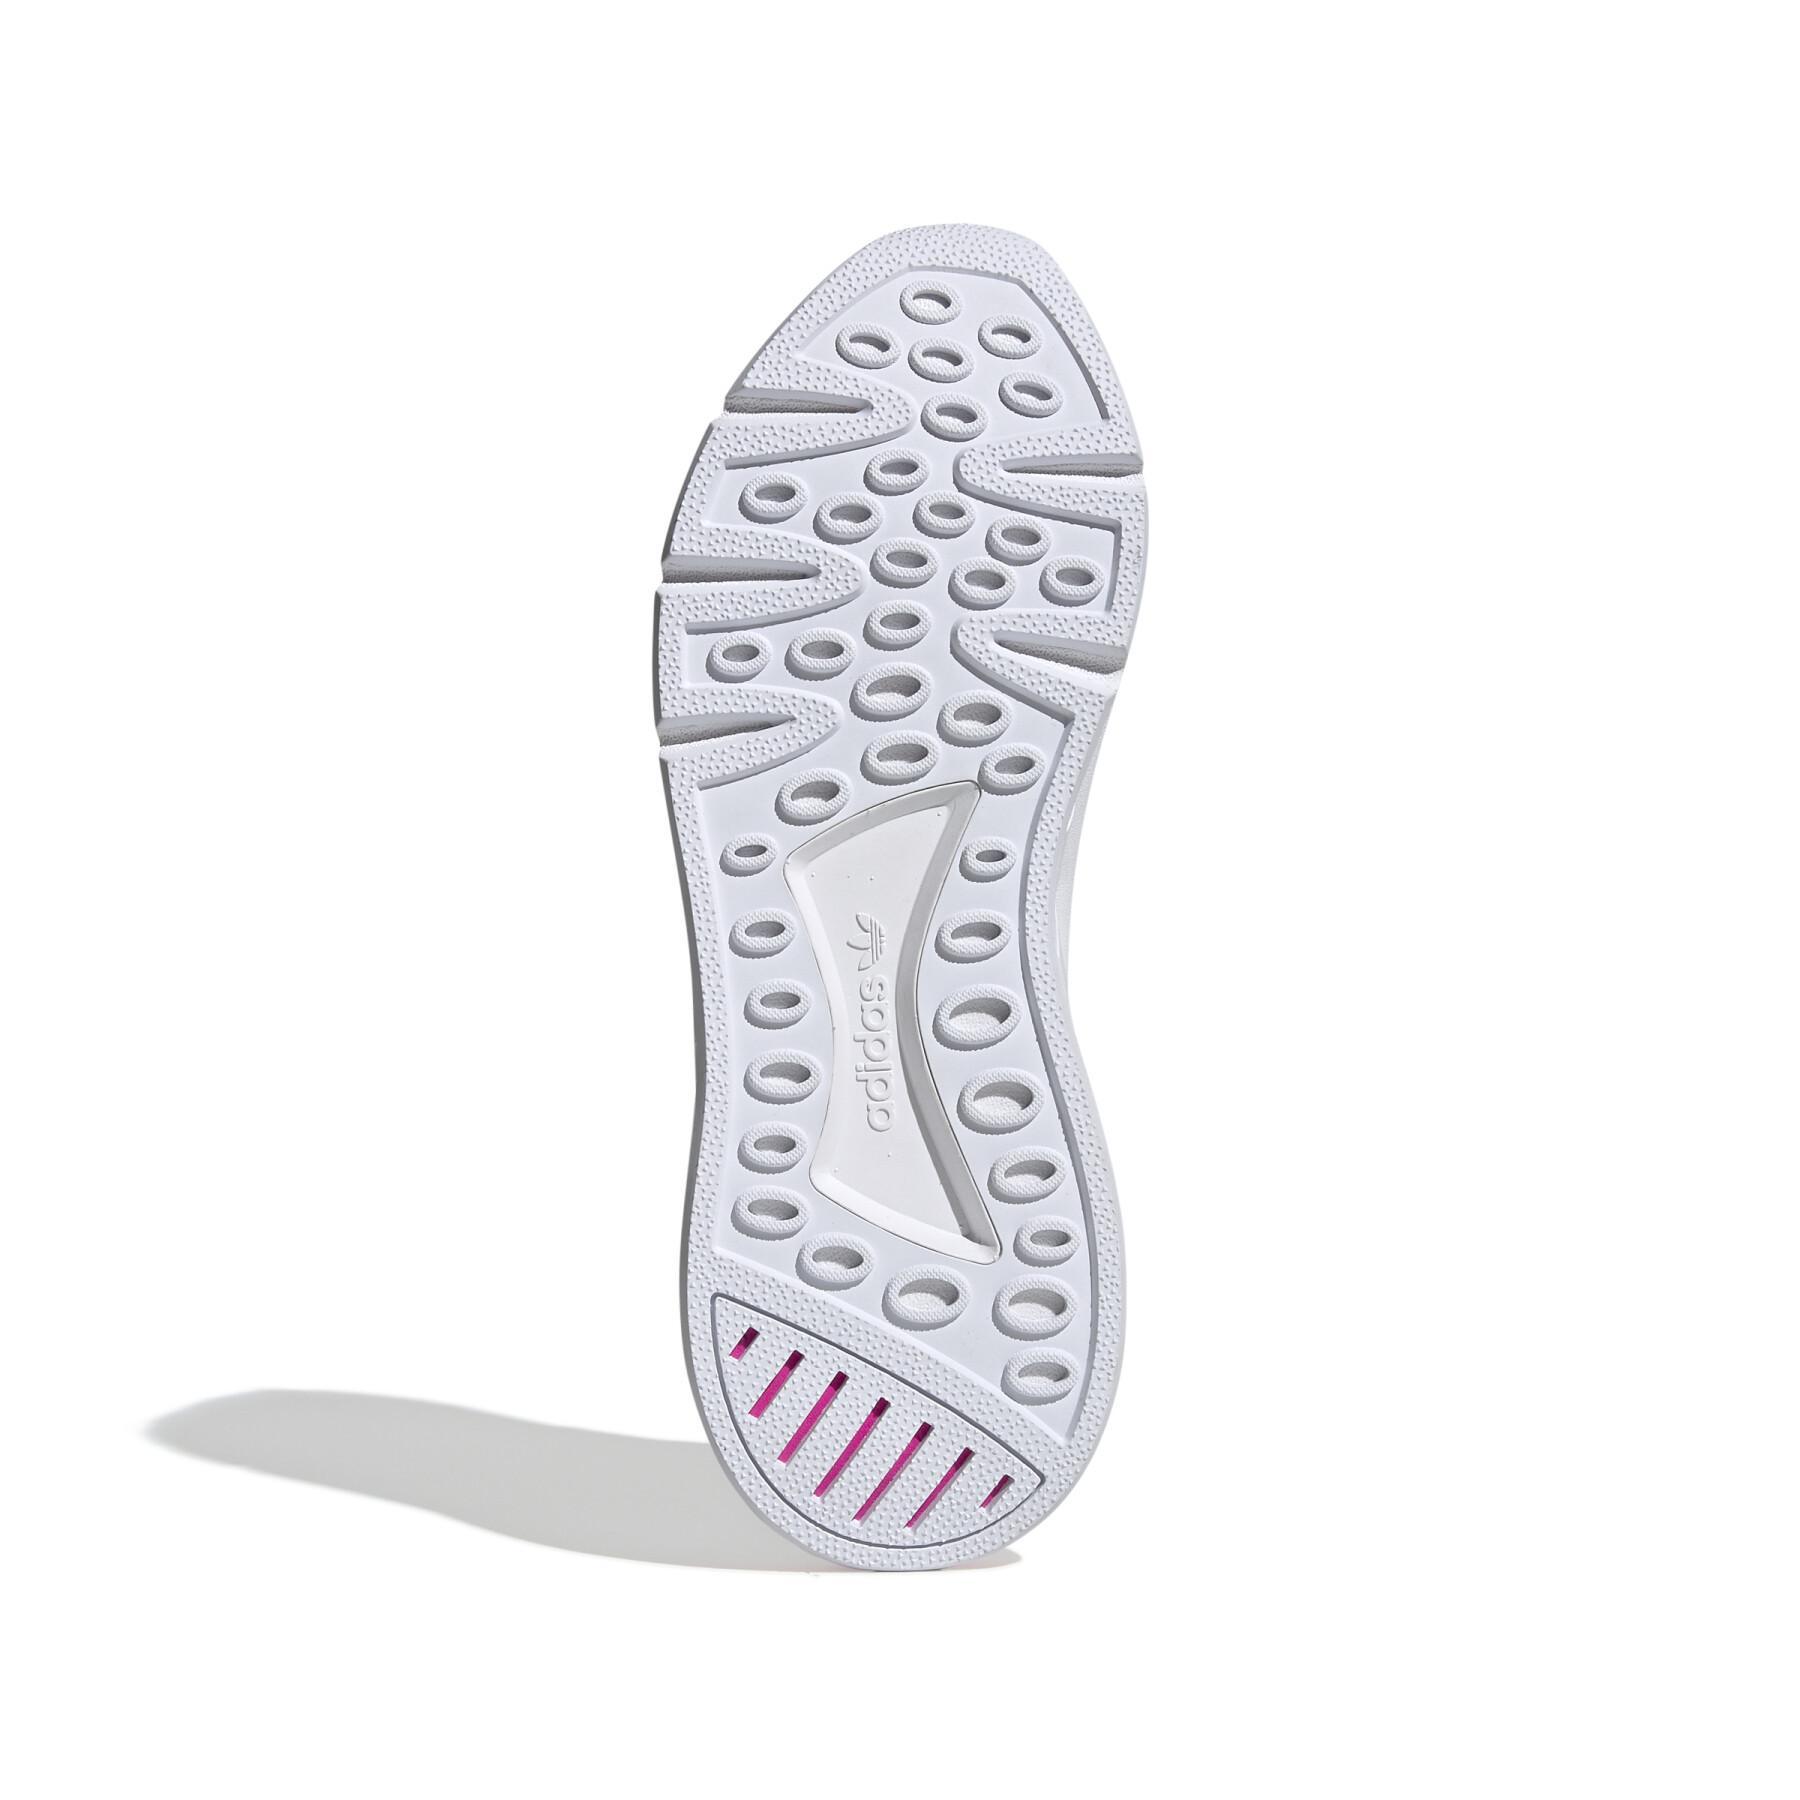 Zapatillas adidas EQT Support Mid ADV Primeknit